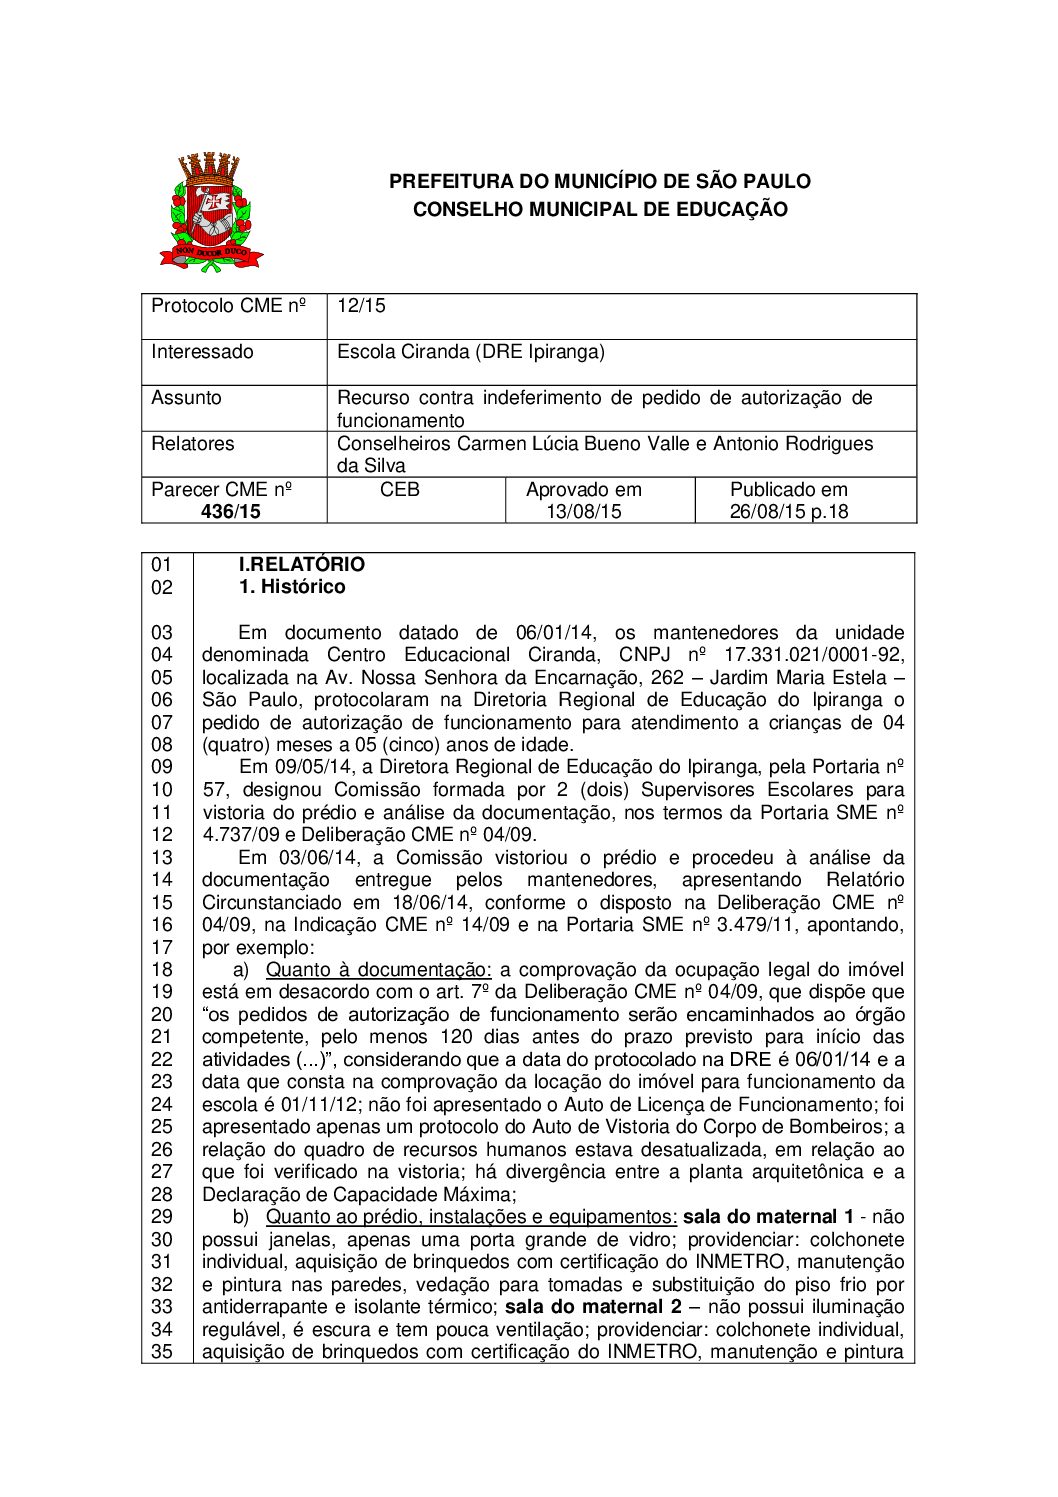 Parecer CME nº 436/2015 - Escola Ciranda (DRE Ipiranga) - Recurso contra indeferimento de pedido de autorização de funcionamento 